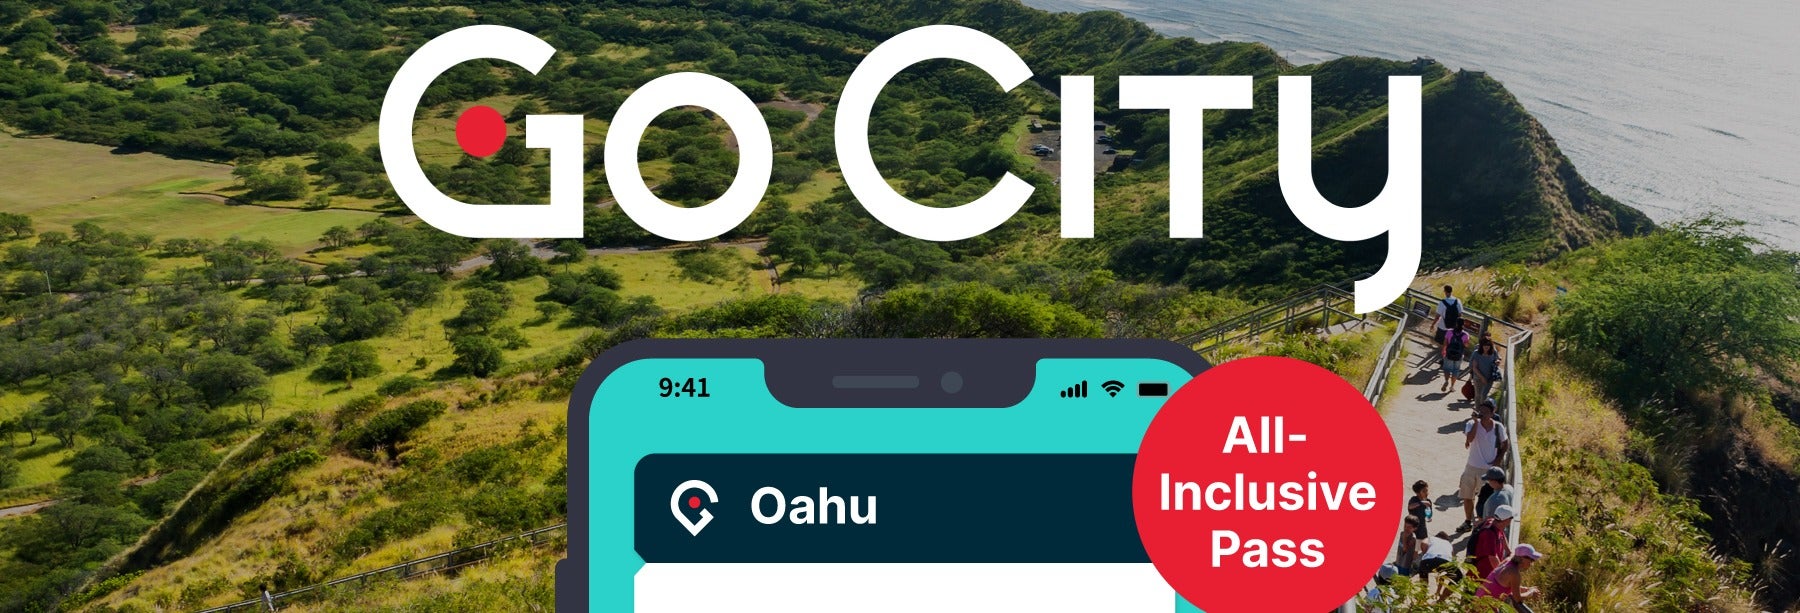 Go City: Oahu All-Inclusive Pass